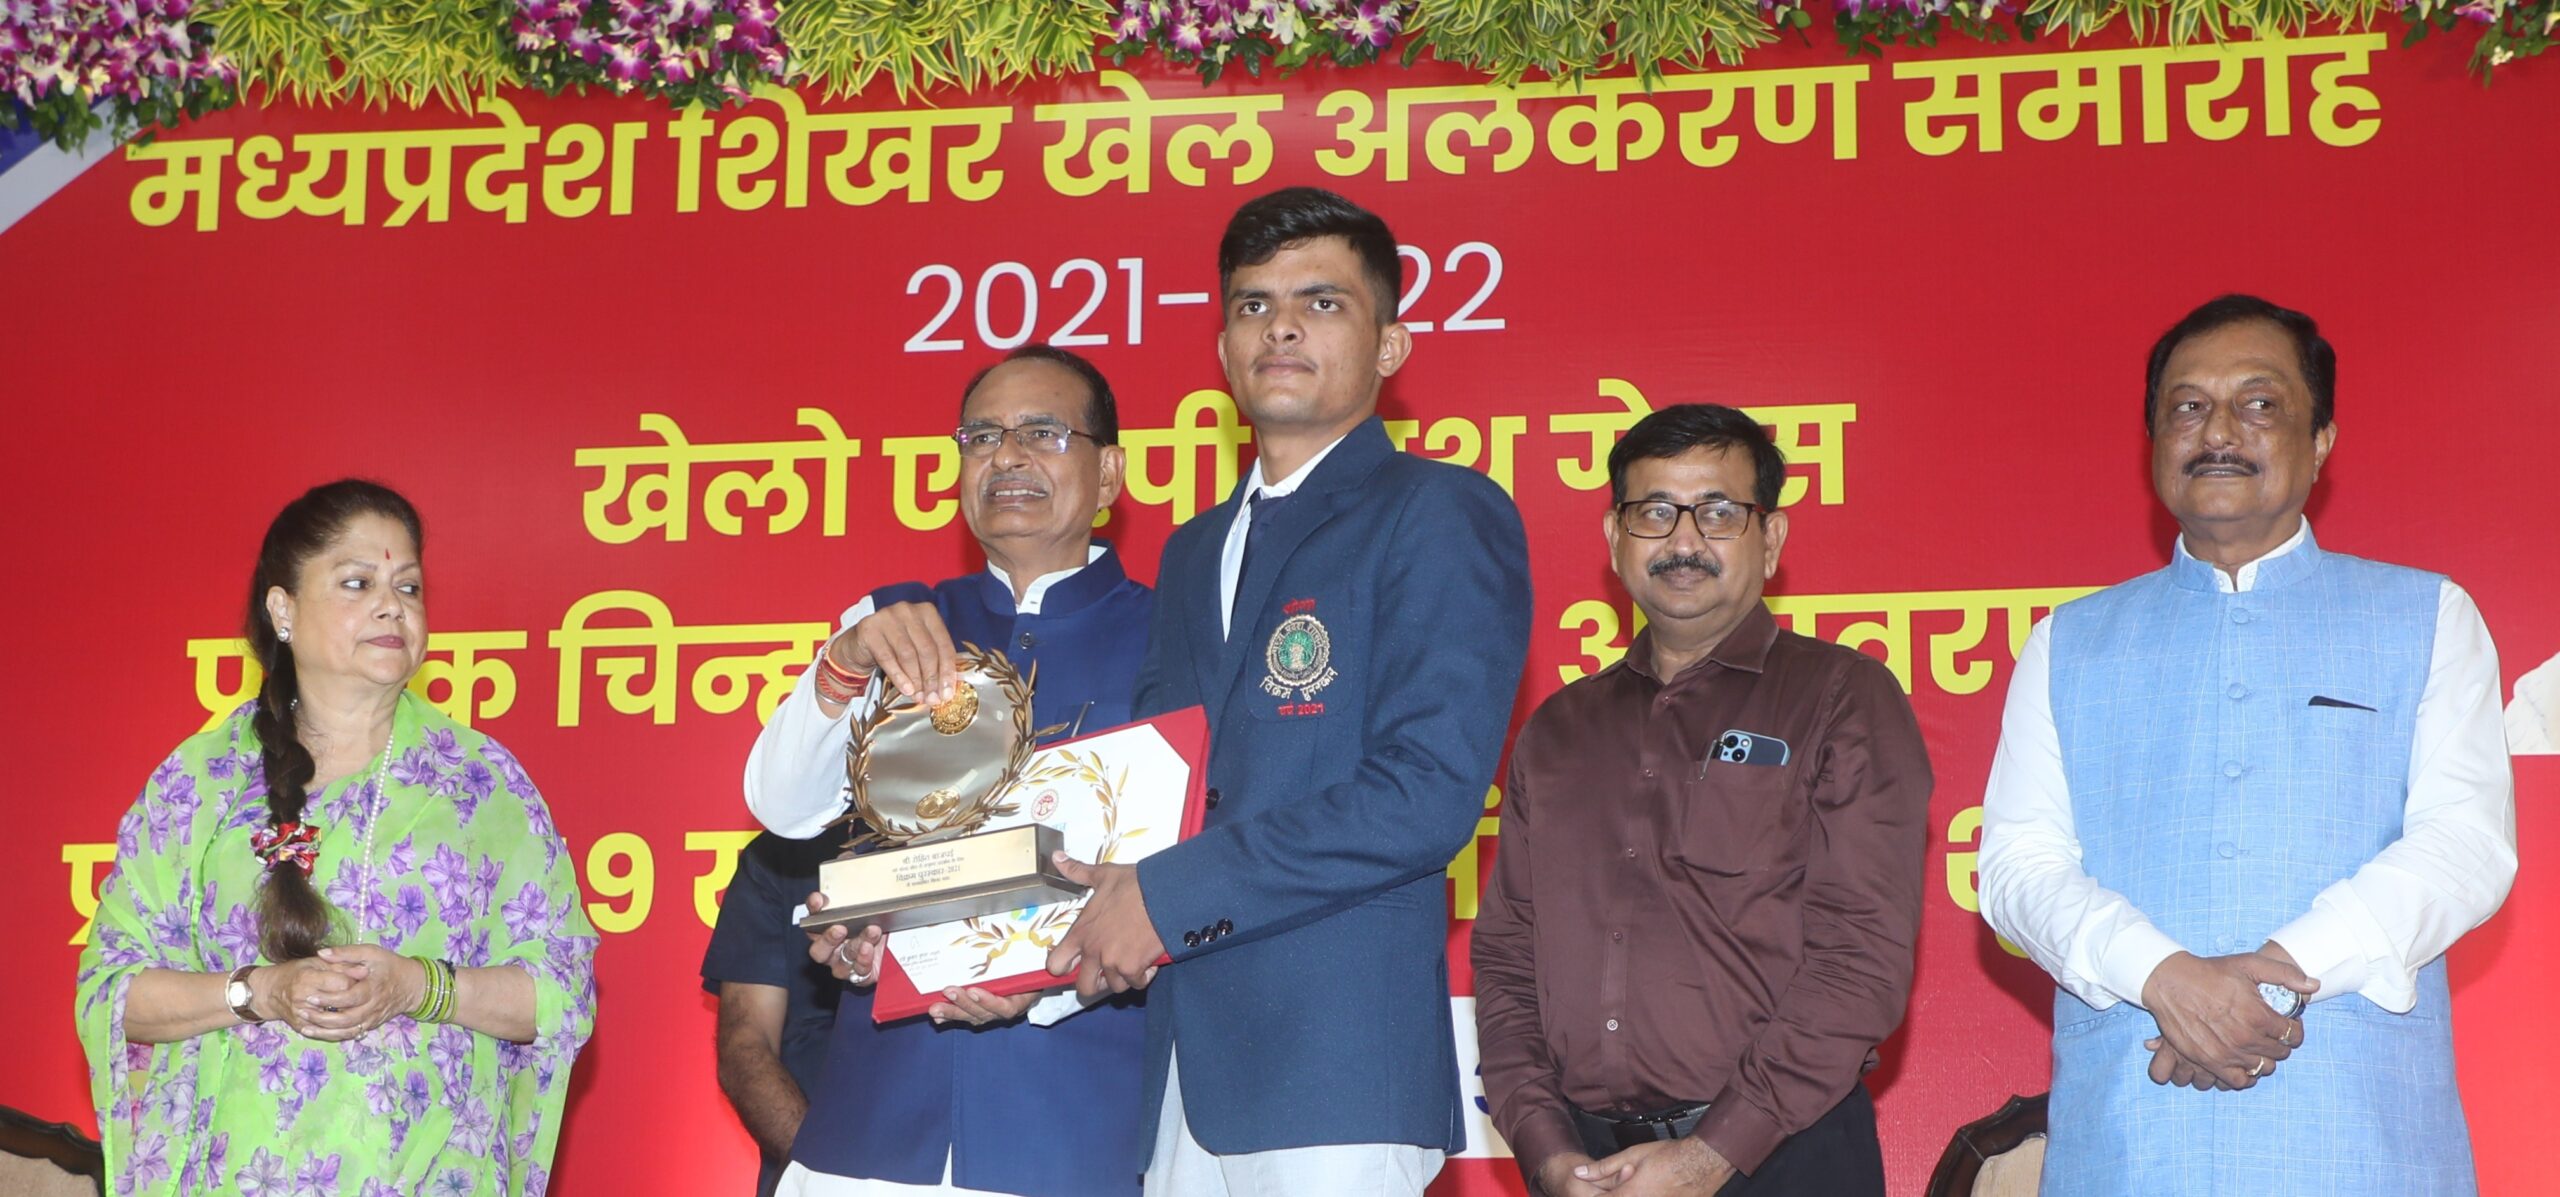 Vikram Award 2021